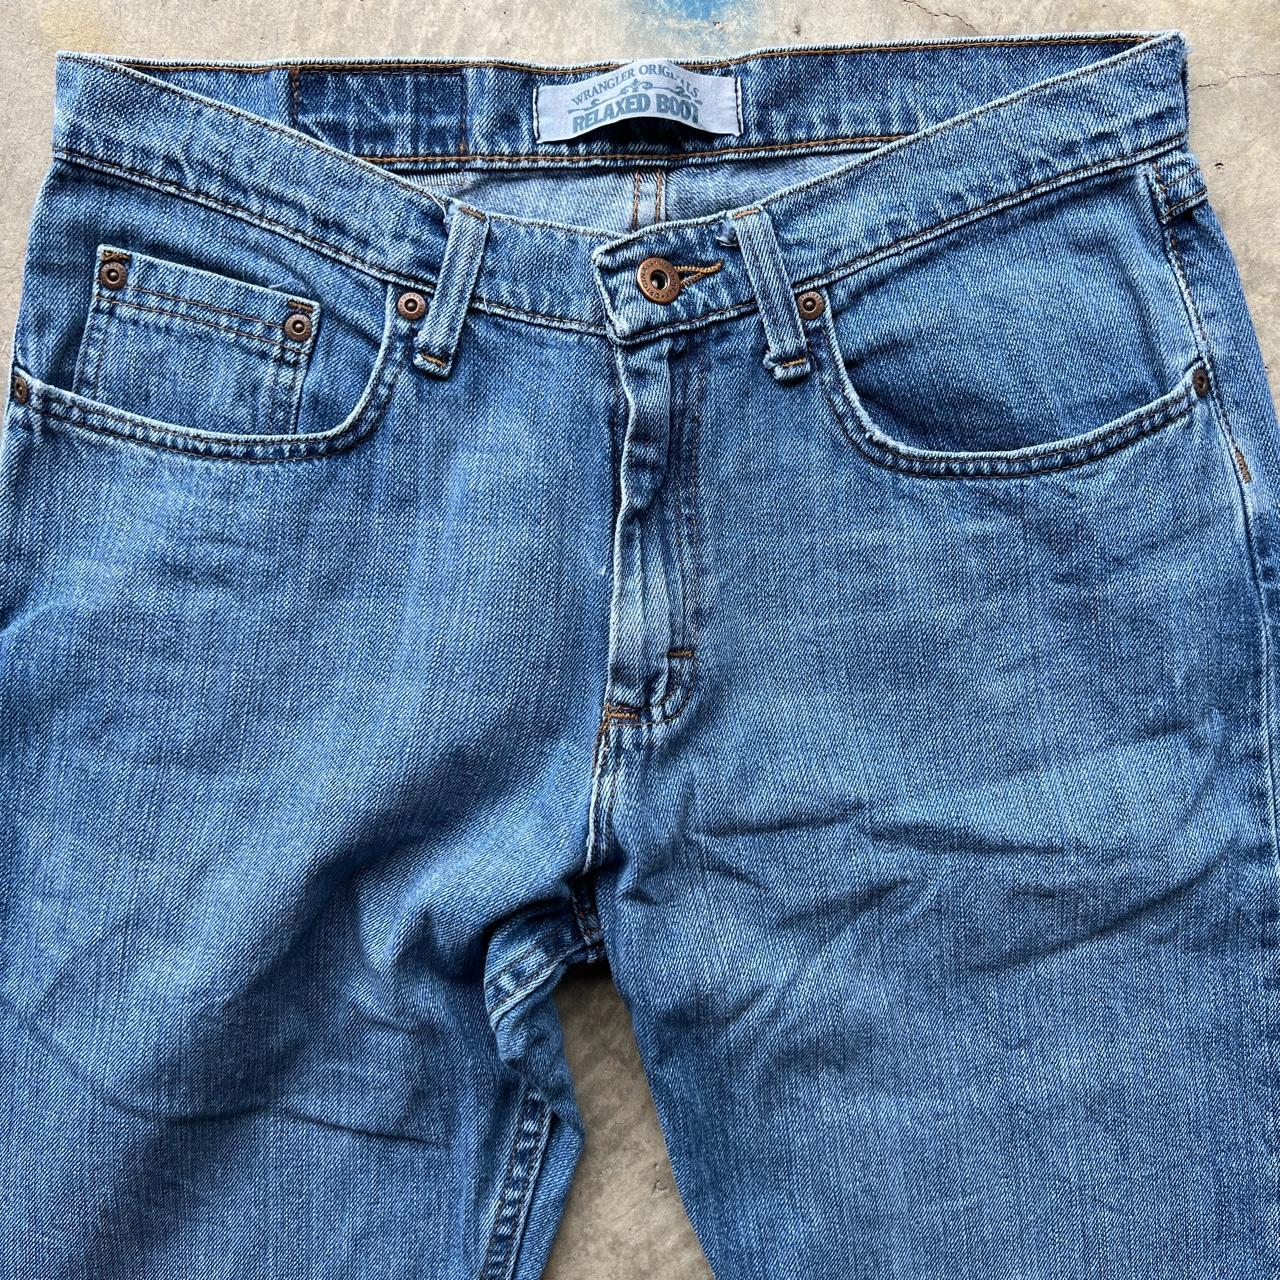 Wrangler Men's Blue Jeans (3)